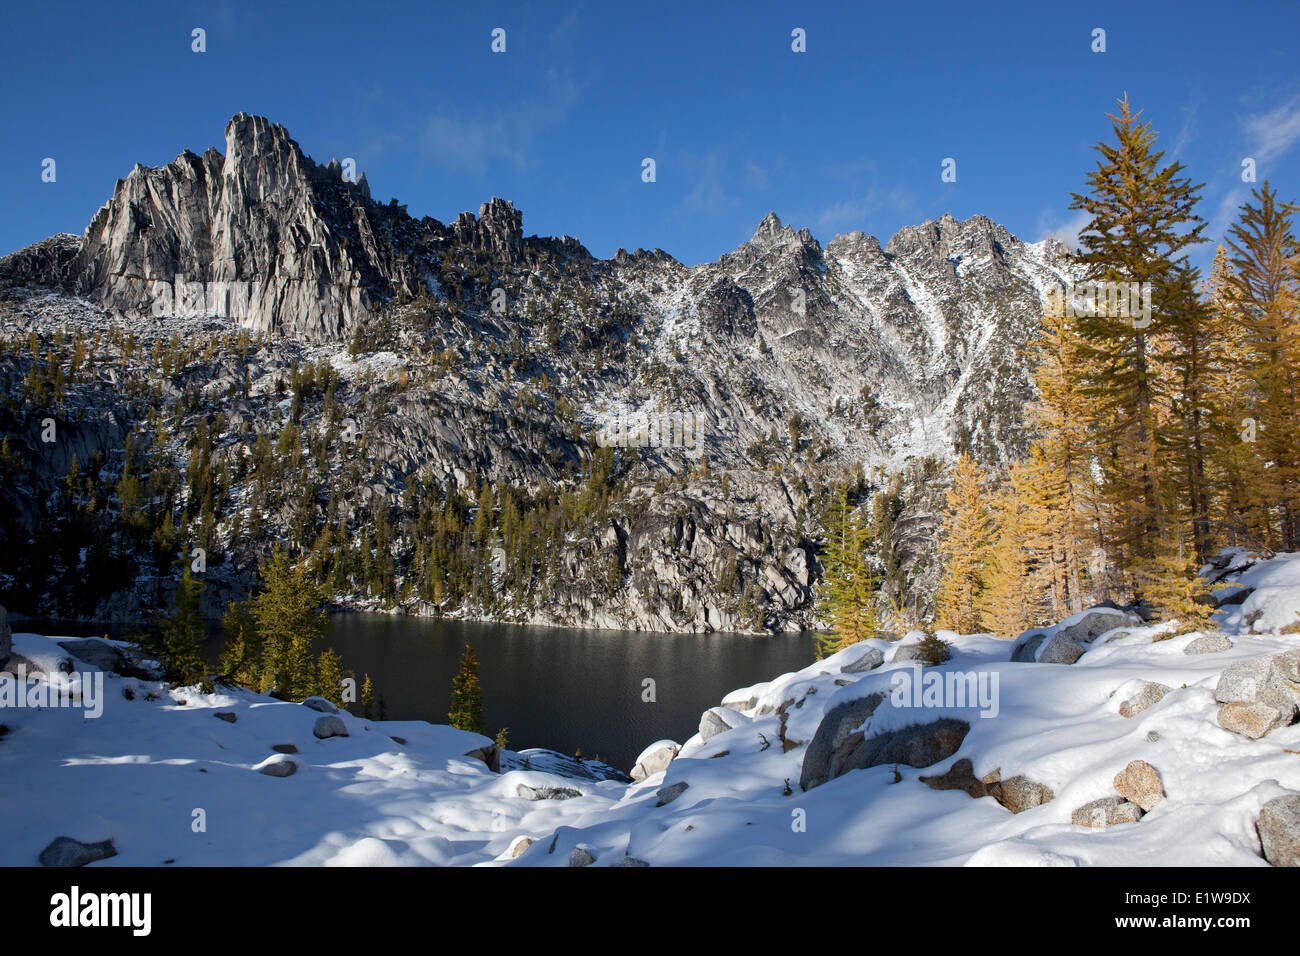 See-Viviane, goldenen Lärchen und Prusik Peak, Verzauberungen, Alpenseen Wildnis, US-Bundesstaat Washington, Vereinigte Staaten von Amerika Stockfoto